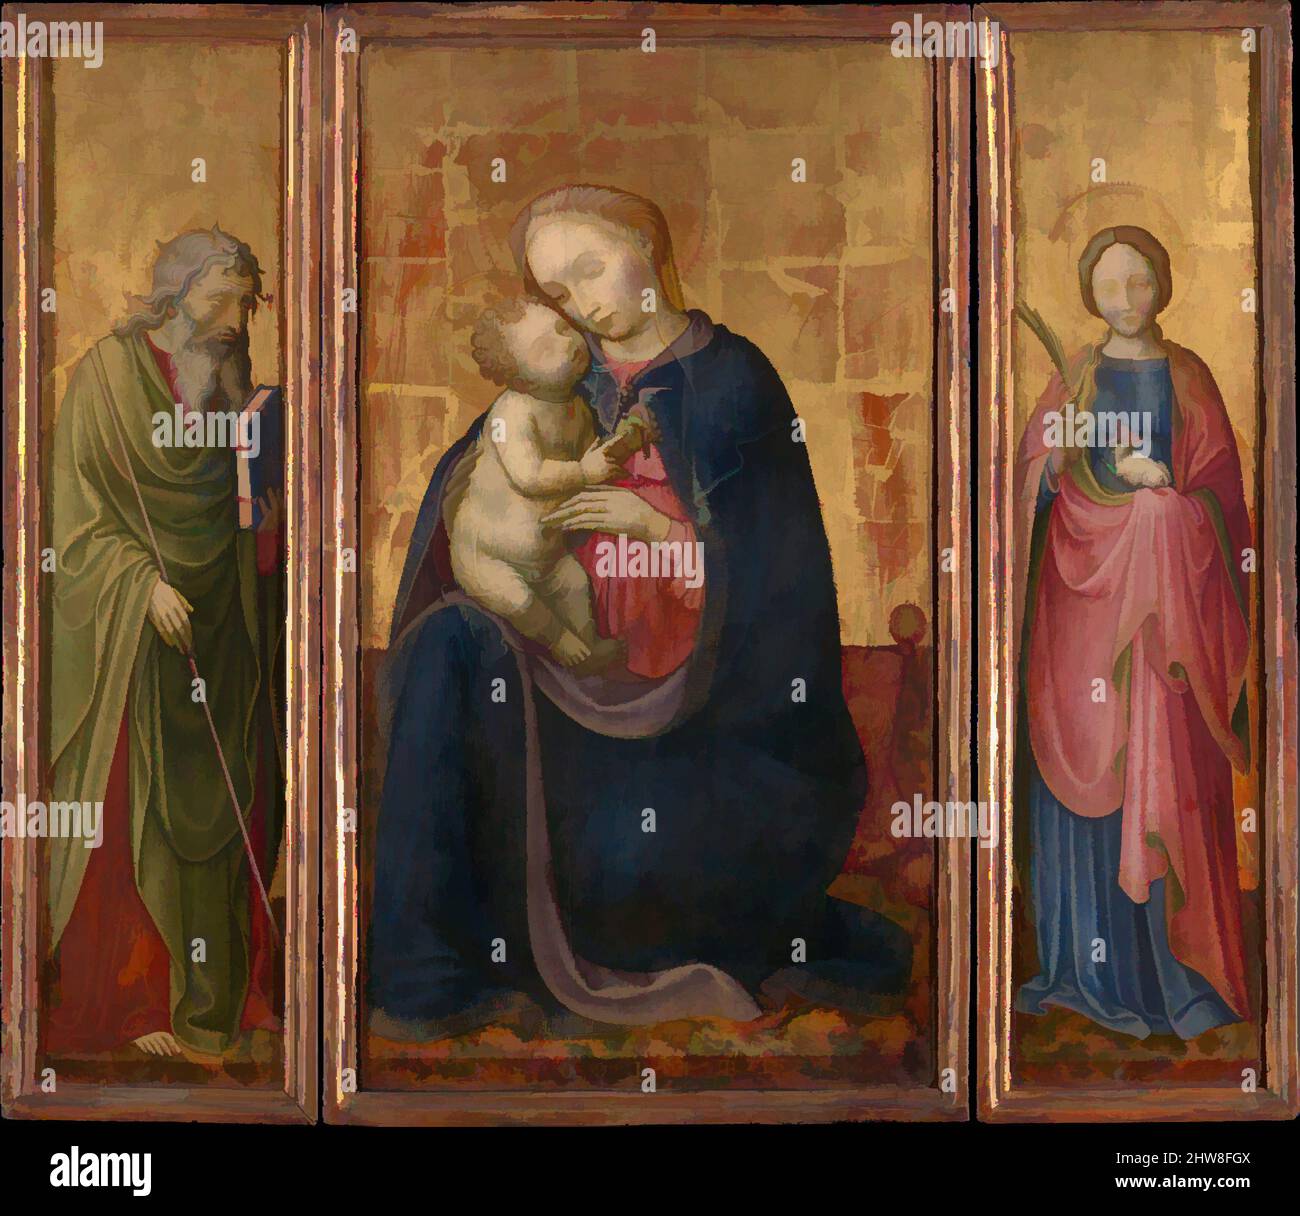 Art inspiré par Madonna et l'enfant avec les saints Philip et Agnes, ca. 1425–30, Tempéa sur bois, doré, panneau central, hors tout 23 1/2 x 13 1/8 po. (59,7 x 33,3 cm), surface peinte 23 1/8 x 12 3/4 po (58,7 x 32,4 cm); chaque aile, hors tout 23 5/8 x 6 po (60 x 15,2 cm), peint, oeuvres classiques modernisées par Artotop avec une touche de modernité. Formes, couleur et valeur, impact visuel accrocheur sur l'art émotions par la liberté d'œuvres d'art d'une manière contemporaine. Un message intemporel qui cherche une nouvelle direction créative. Artistes qui se tournent vers le support numérique et créent le NFT Artotop Banque D'Images